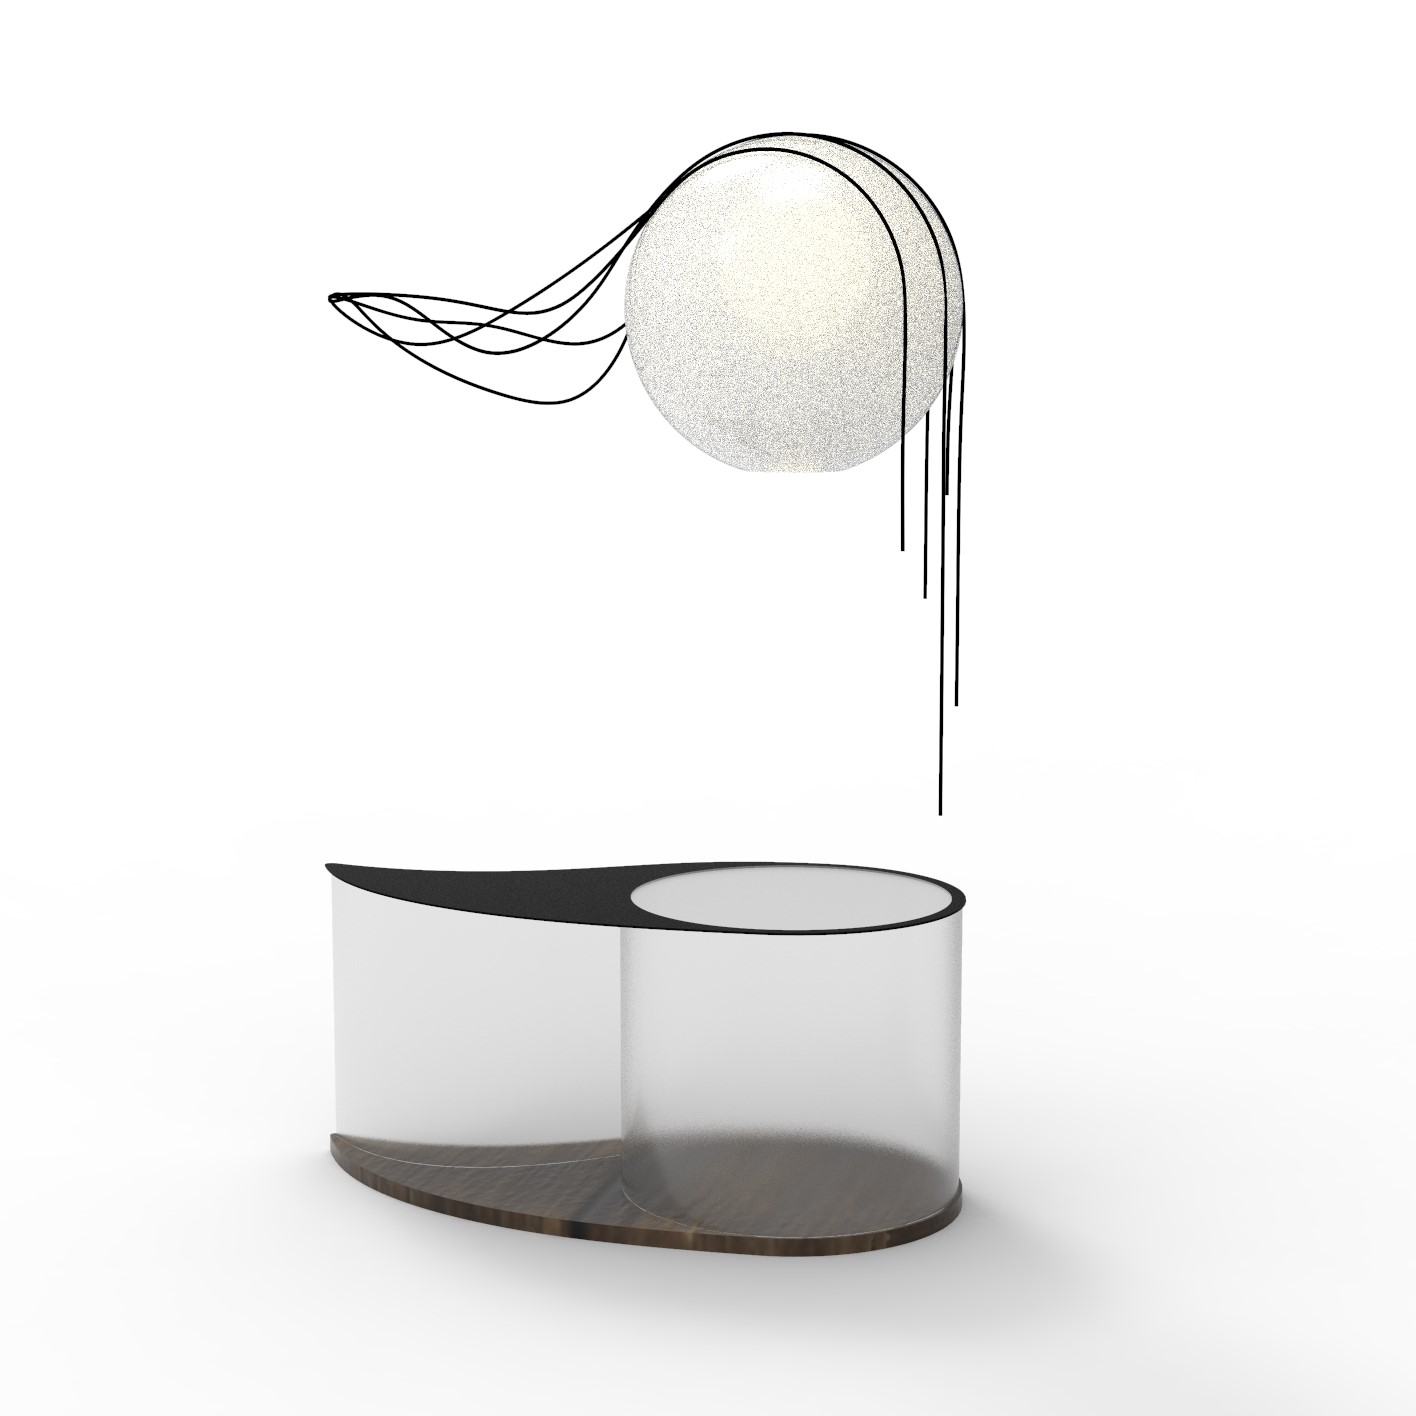 Právě si prohlížíte Produktový design – Rosa na kapradi – set konferenční stolek se svítidlem